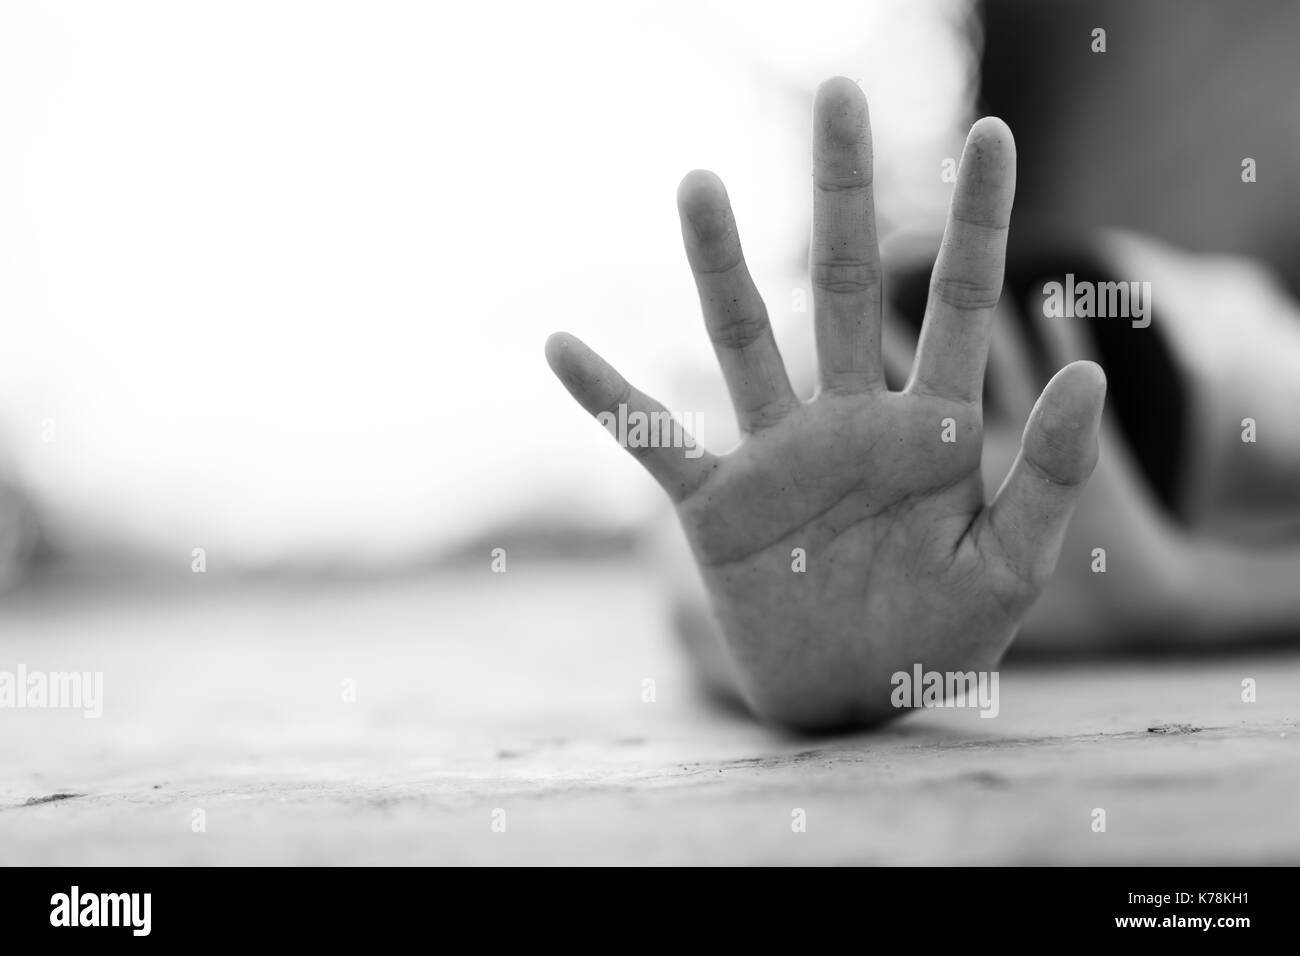 Stop missbrauchte junge Gewalt. Kind Bondage in Winkel Image Blur, Tag der Menschenrechte Konzept. Stockfoto